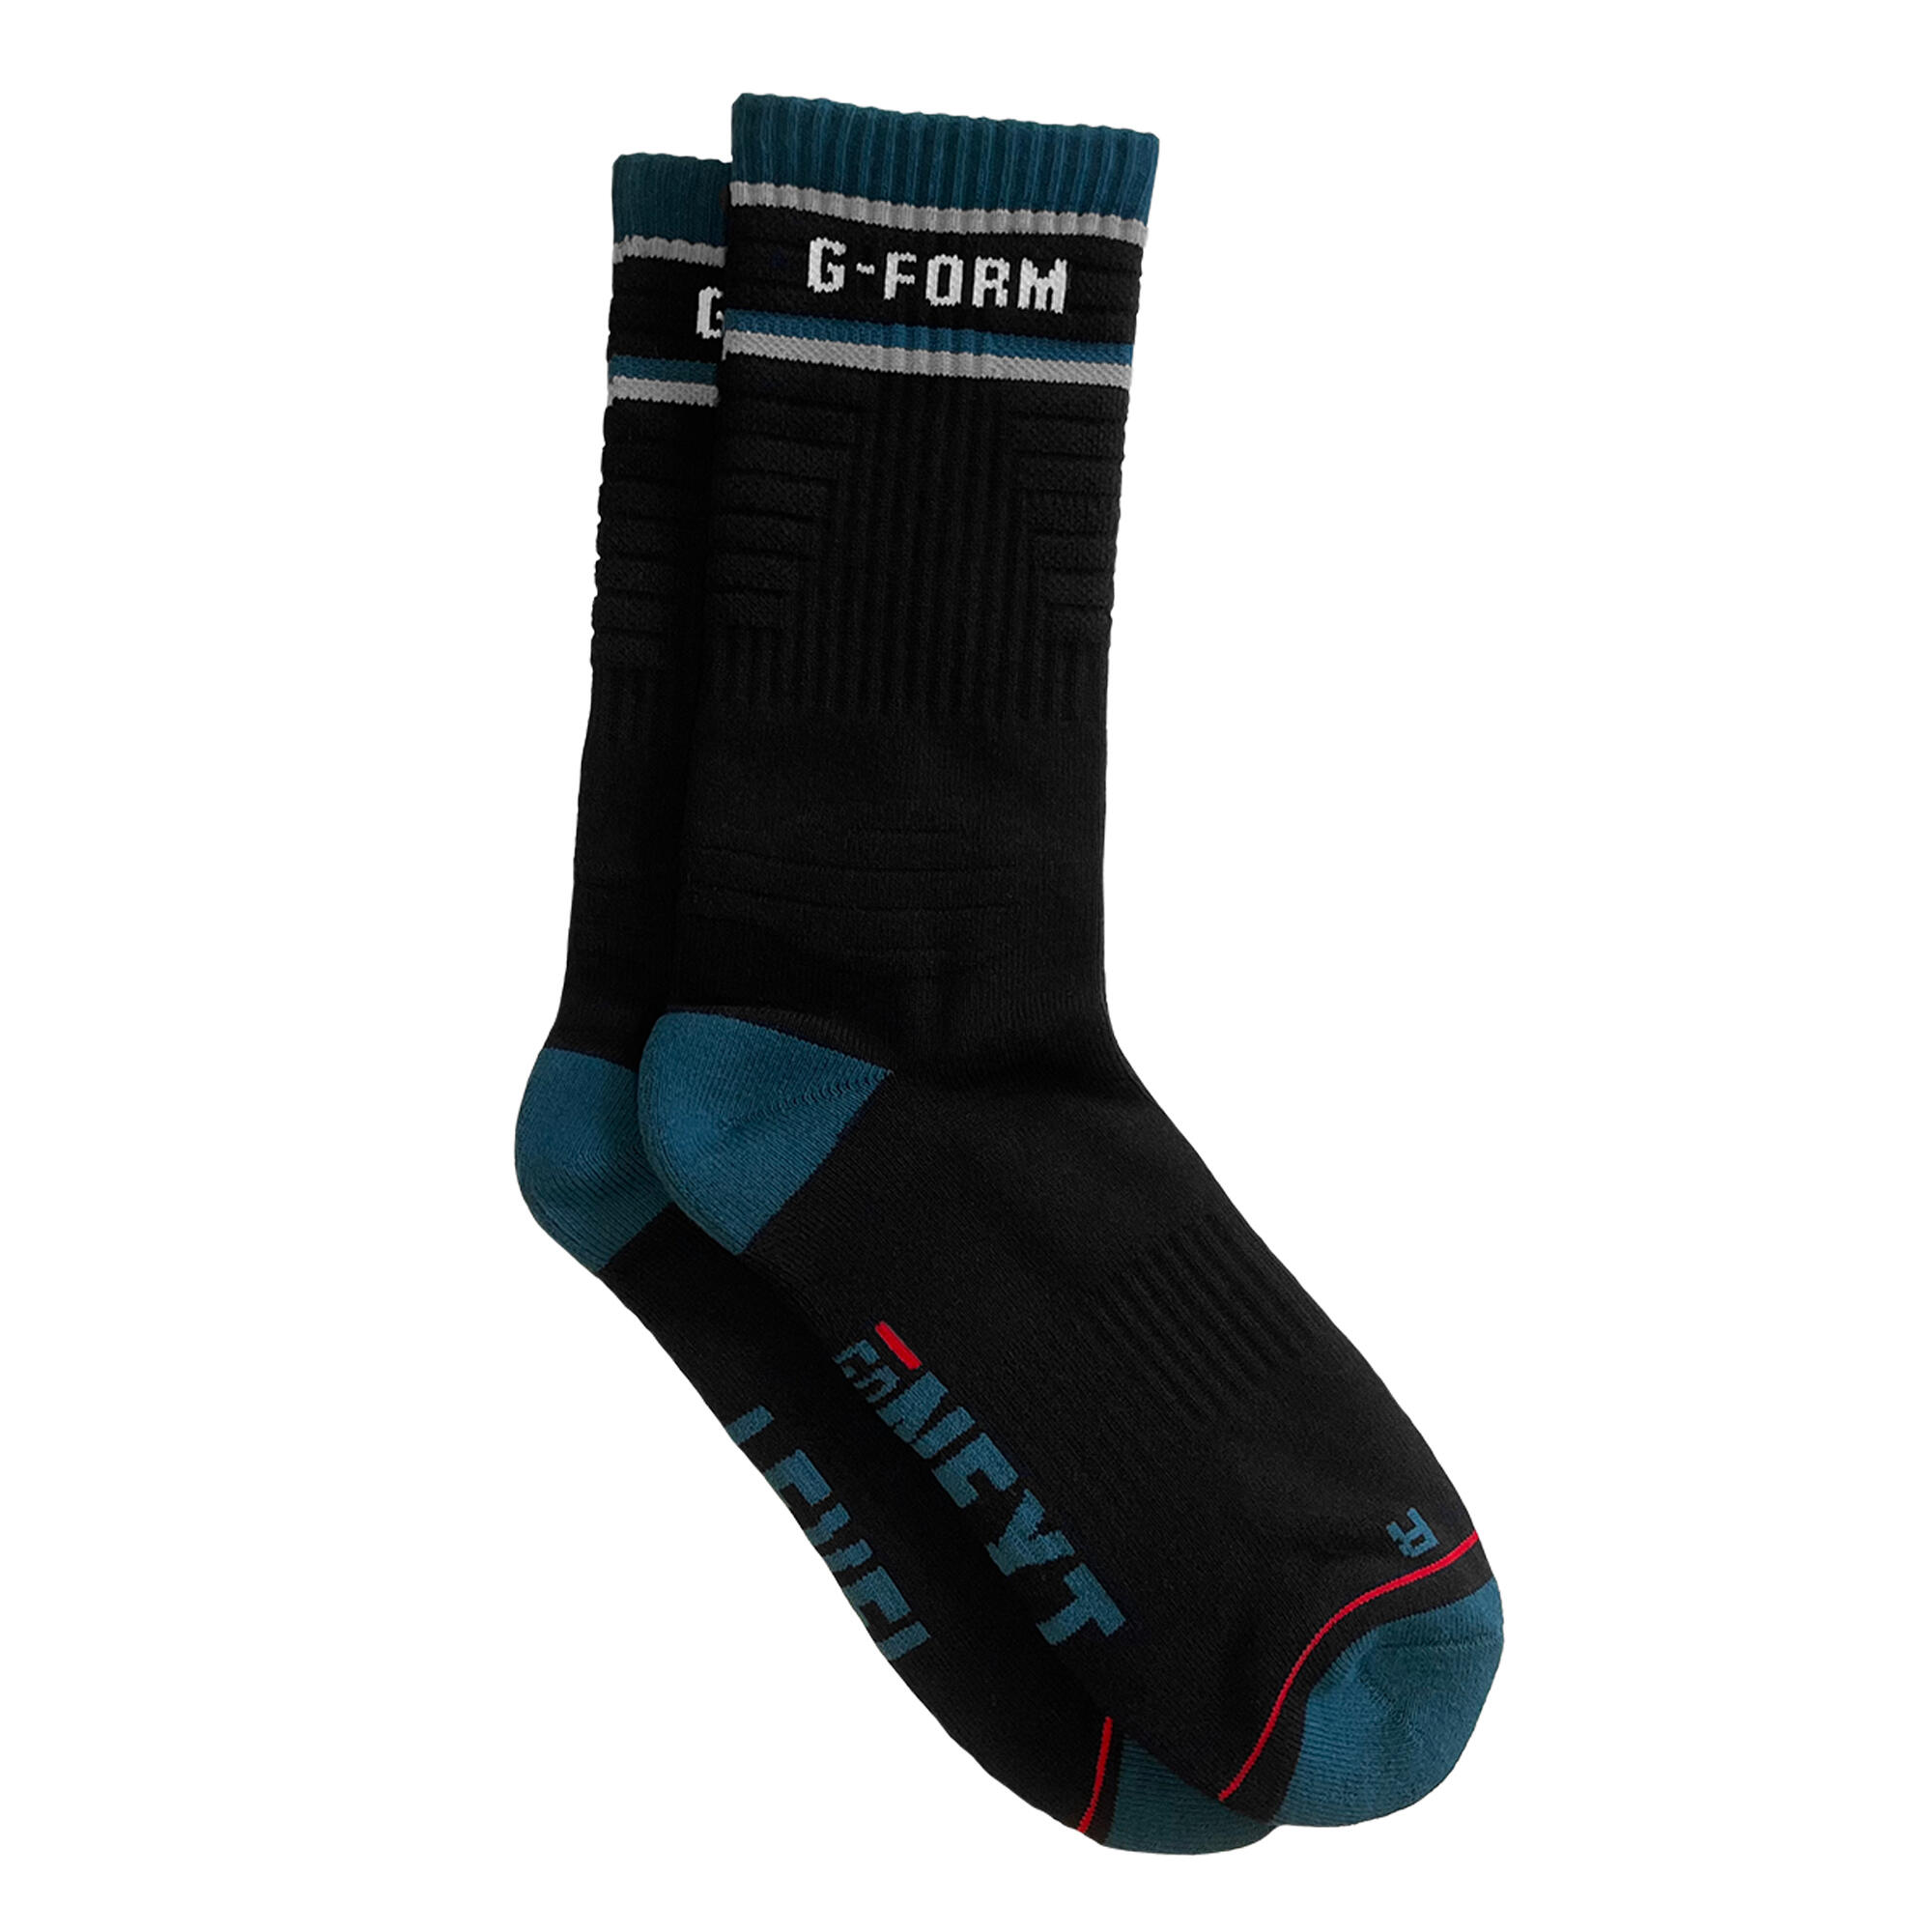 G-FORM G-Form Mid-Calf Sock Black Teal Grey L/XL